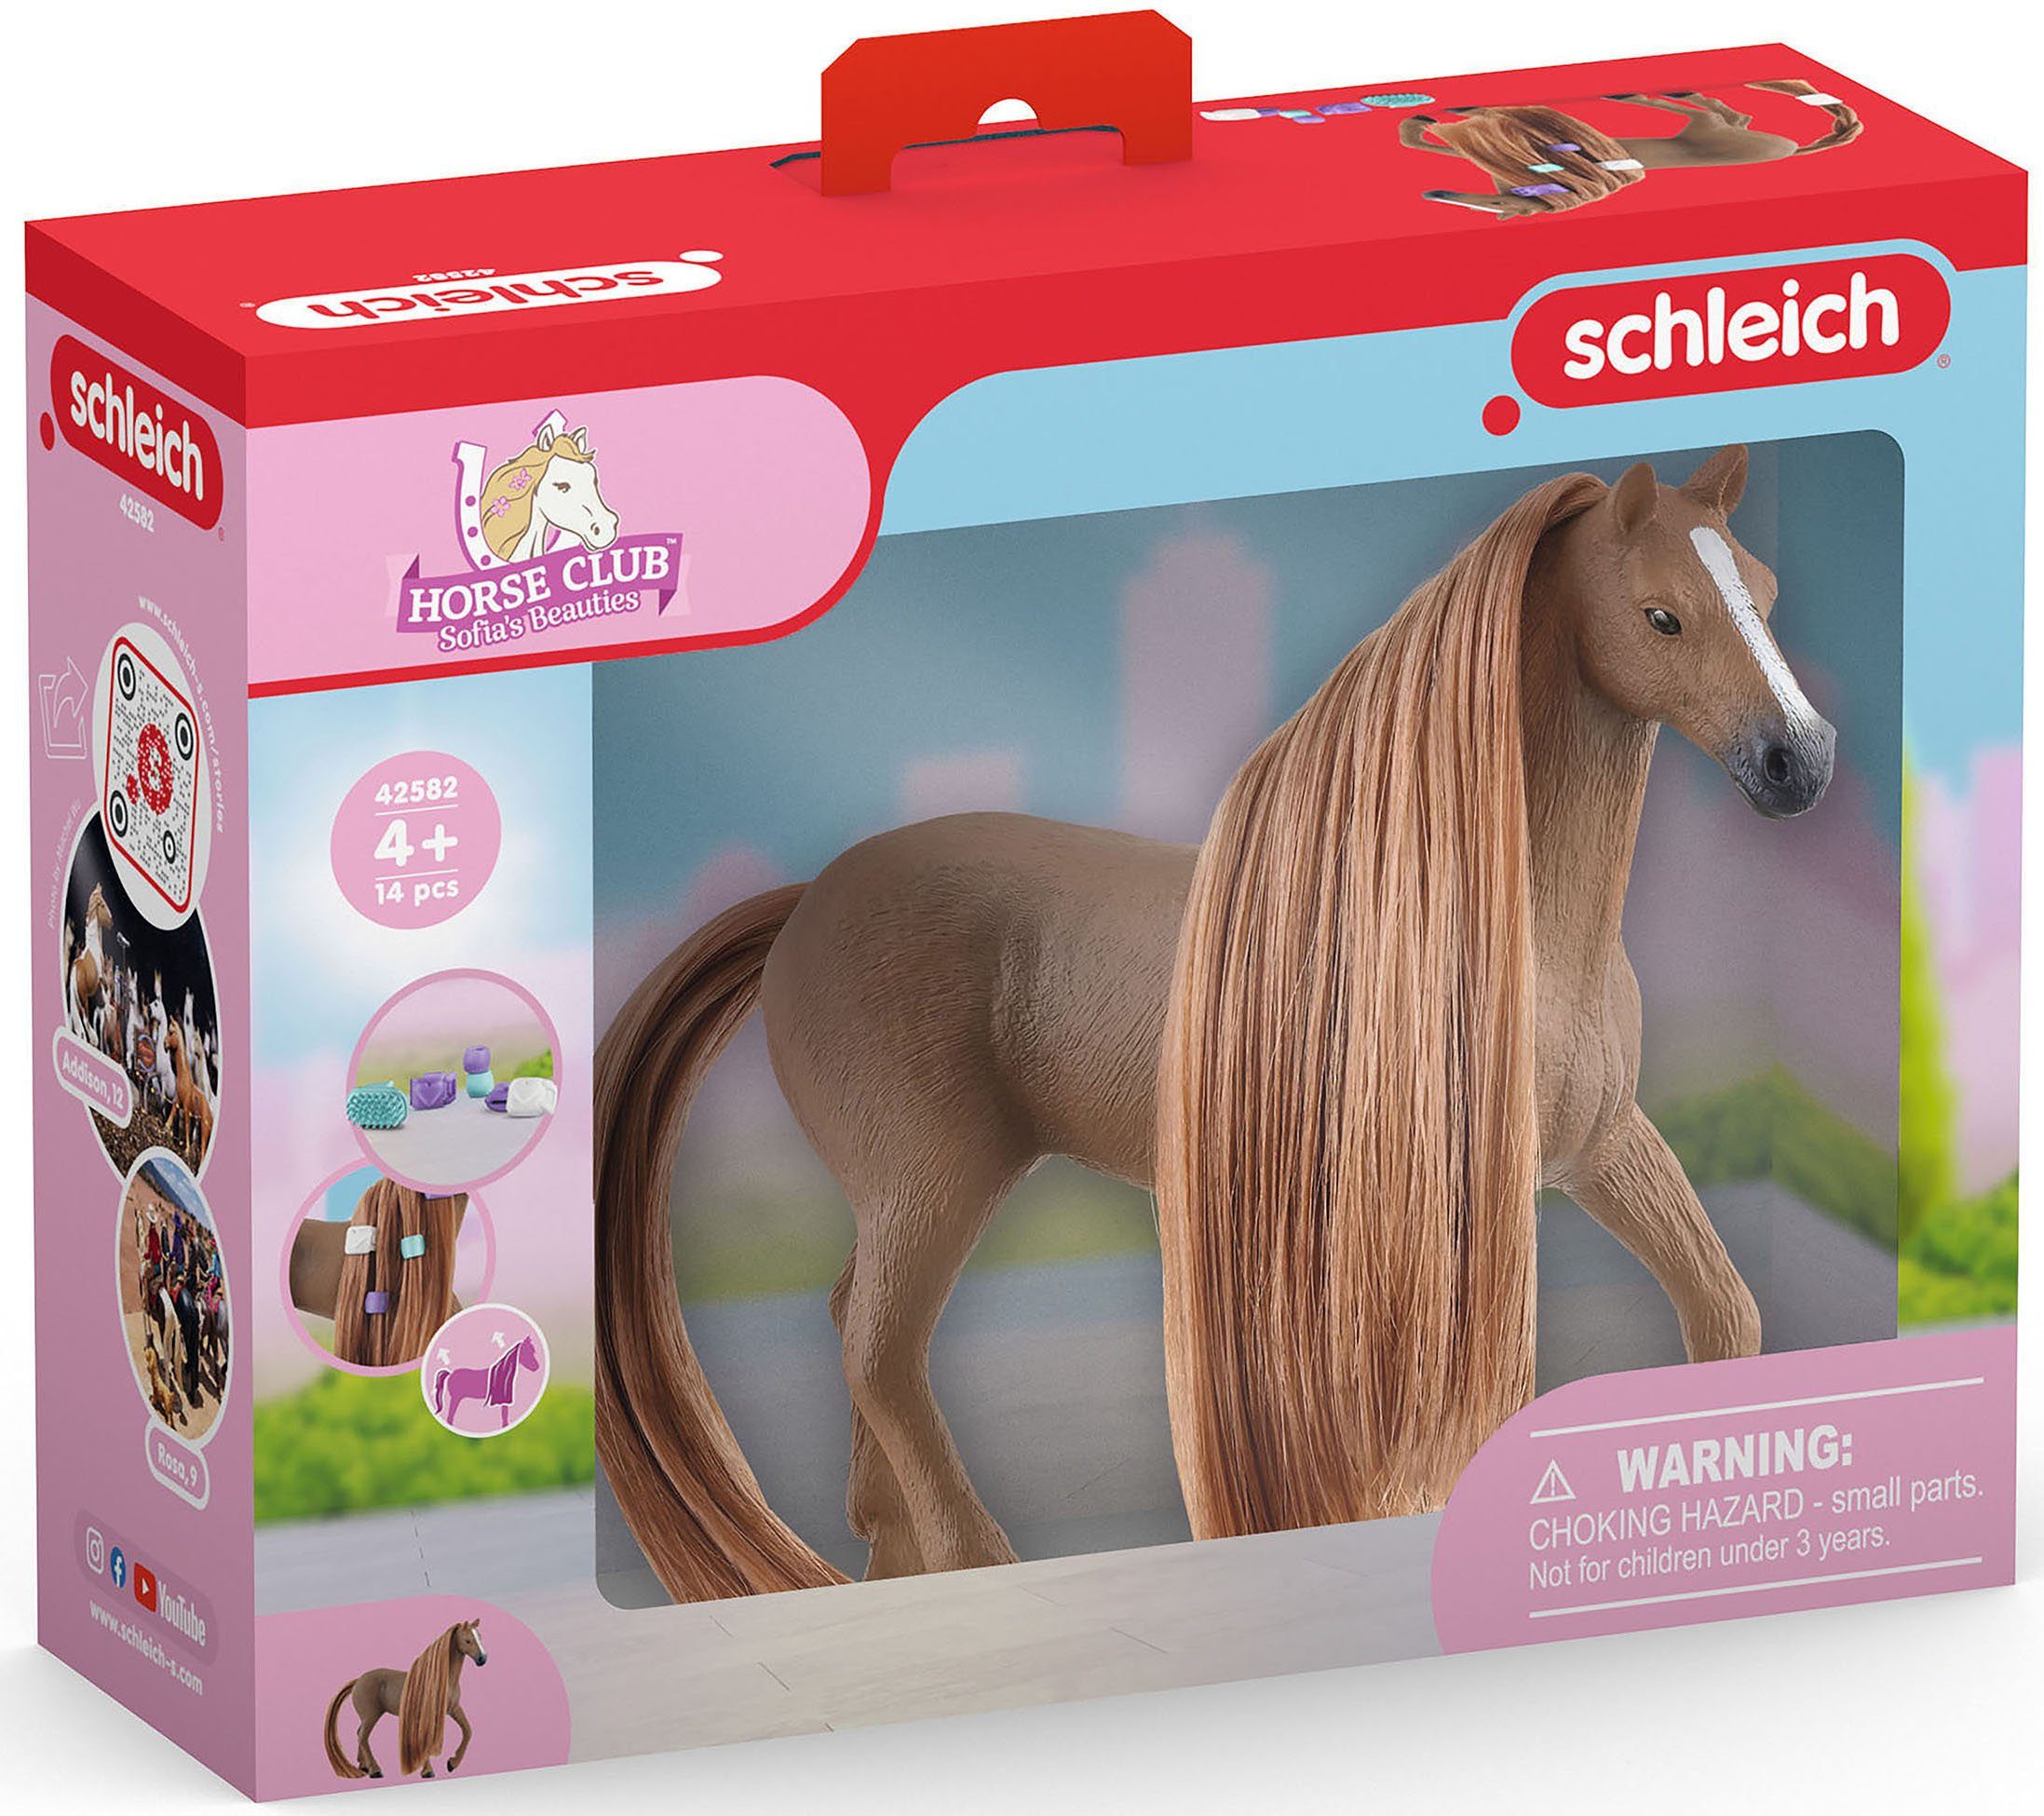 Spielfigur Vollblut CLUB, Horse Sofia's Schleich® Stute (42582), Beauties Beauty Englisch HORSE